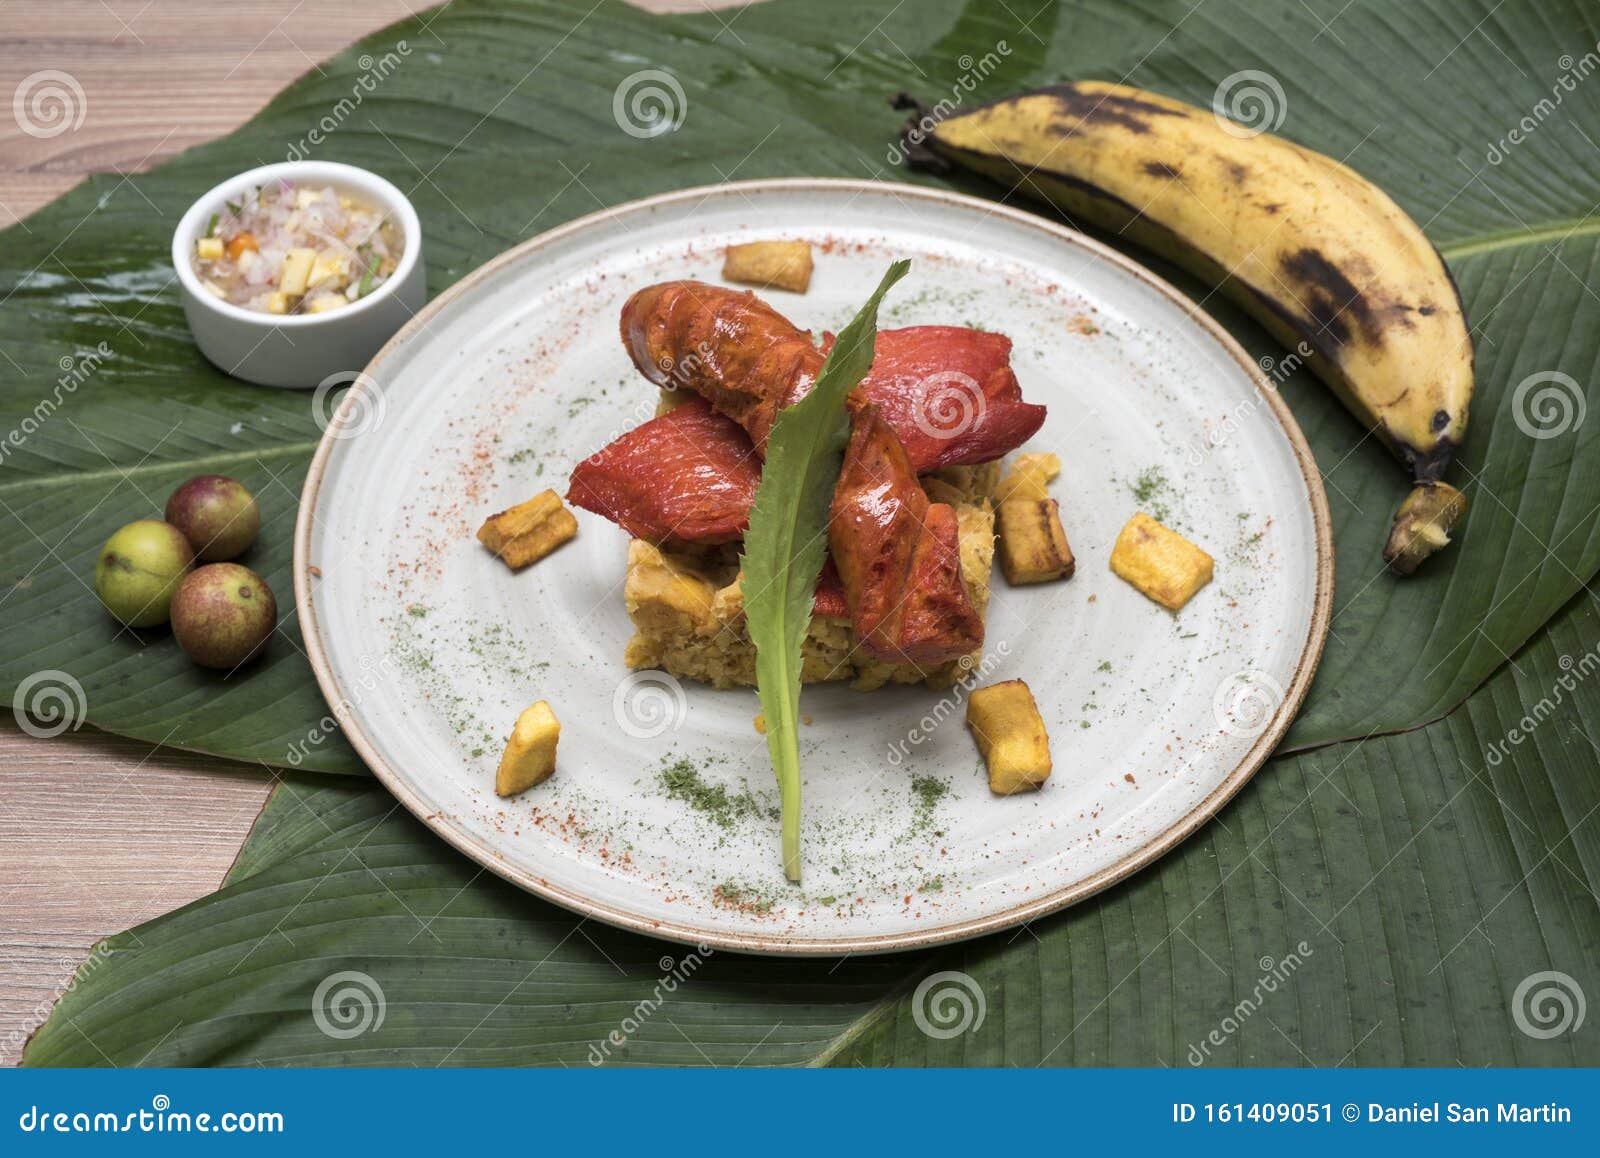 tacacho y cecina plato tradicional de la selva peruana.